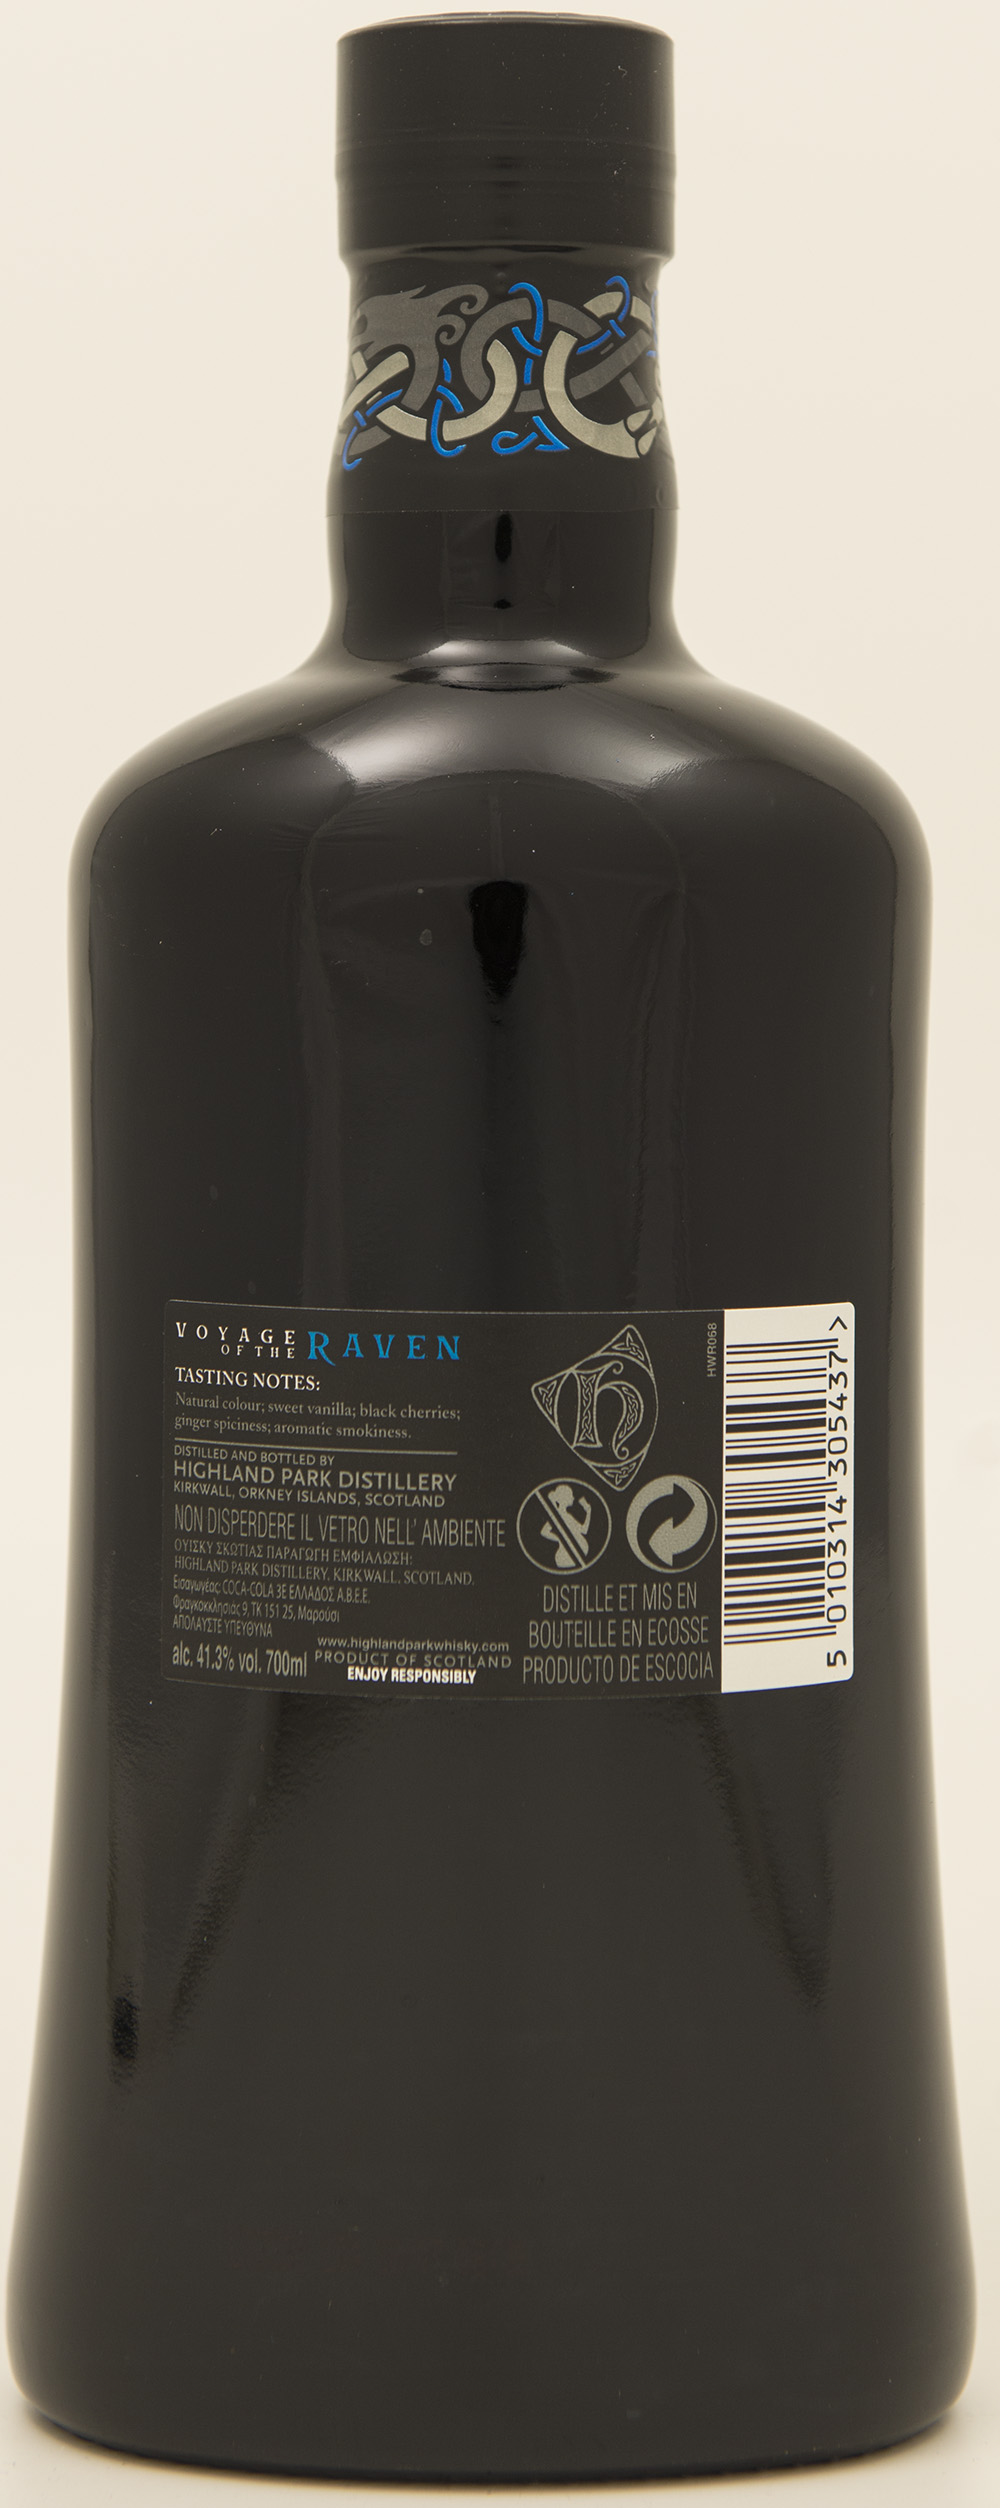 Billede: DSC_3711 - Highland Park - Vouage of the Raven (bottle back).jpg